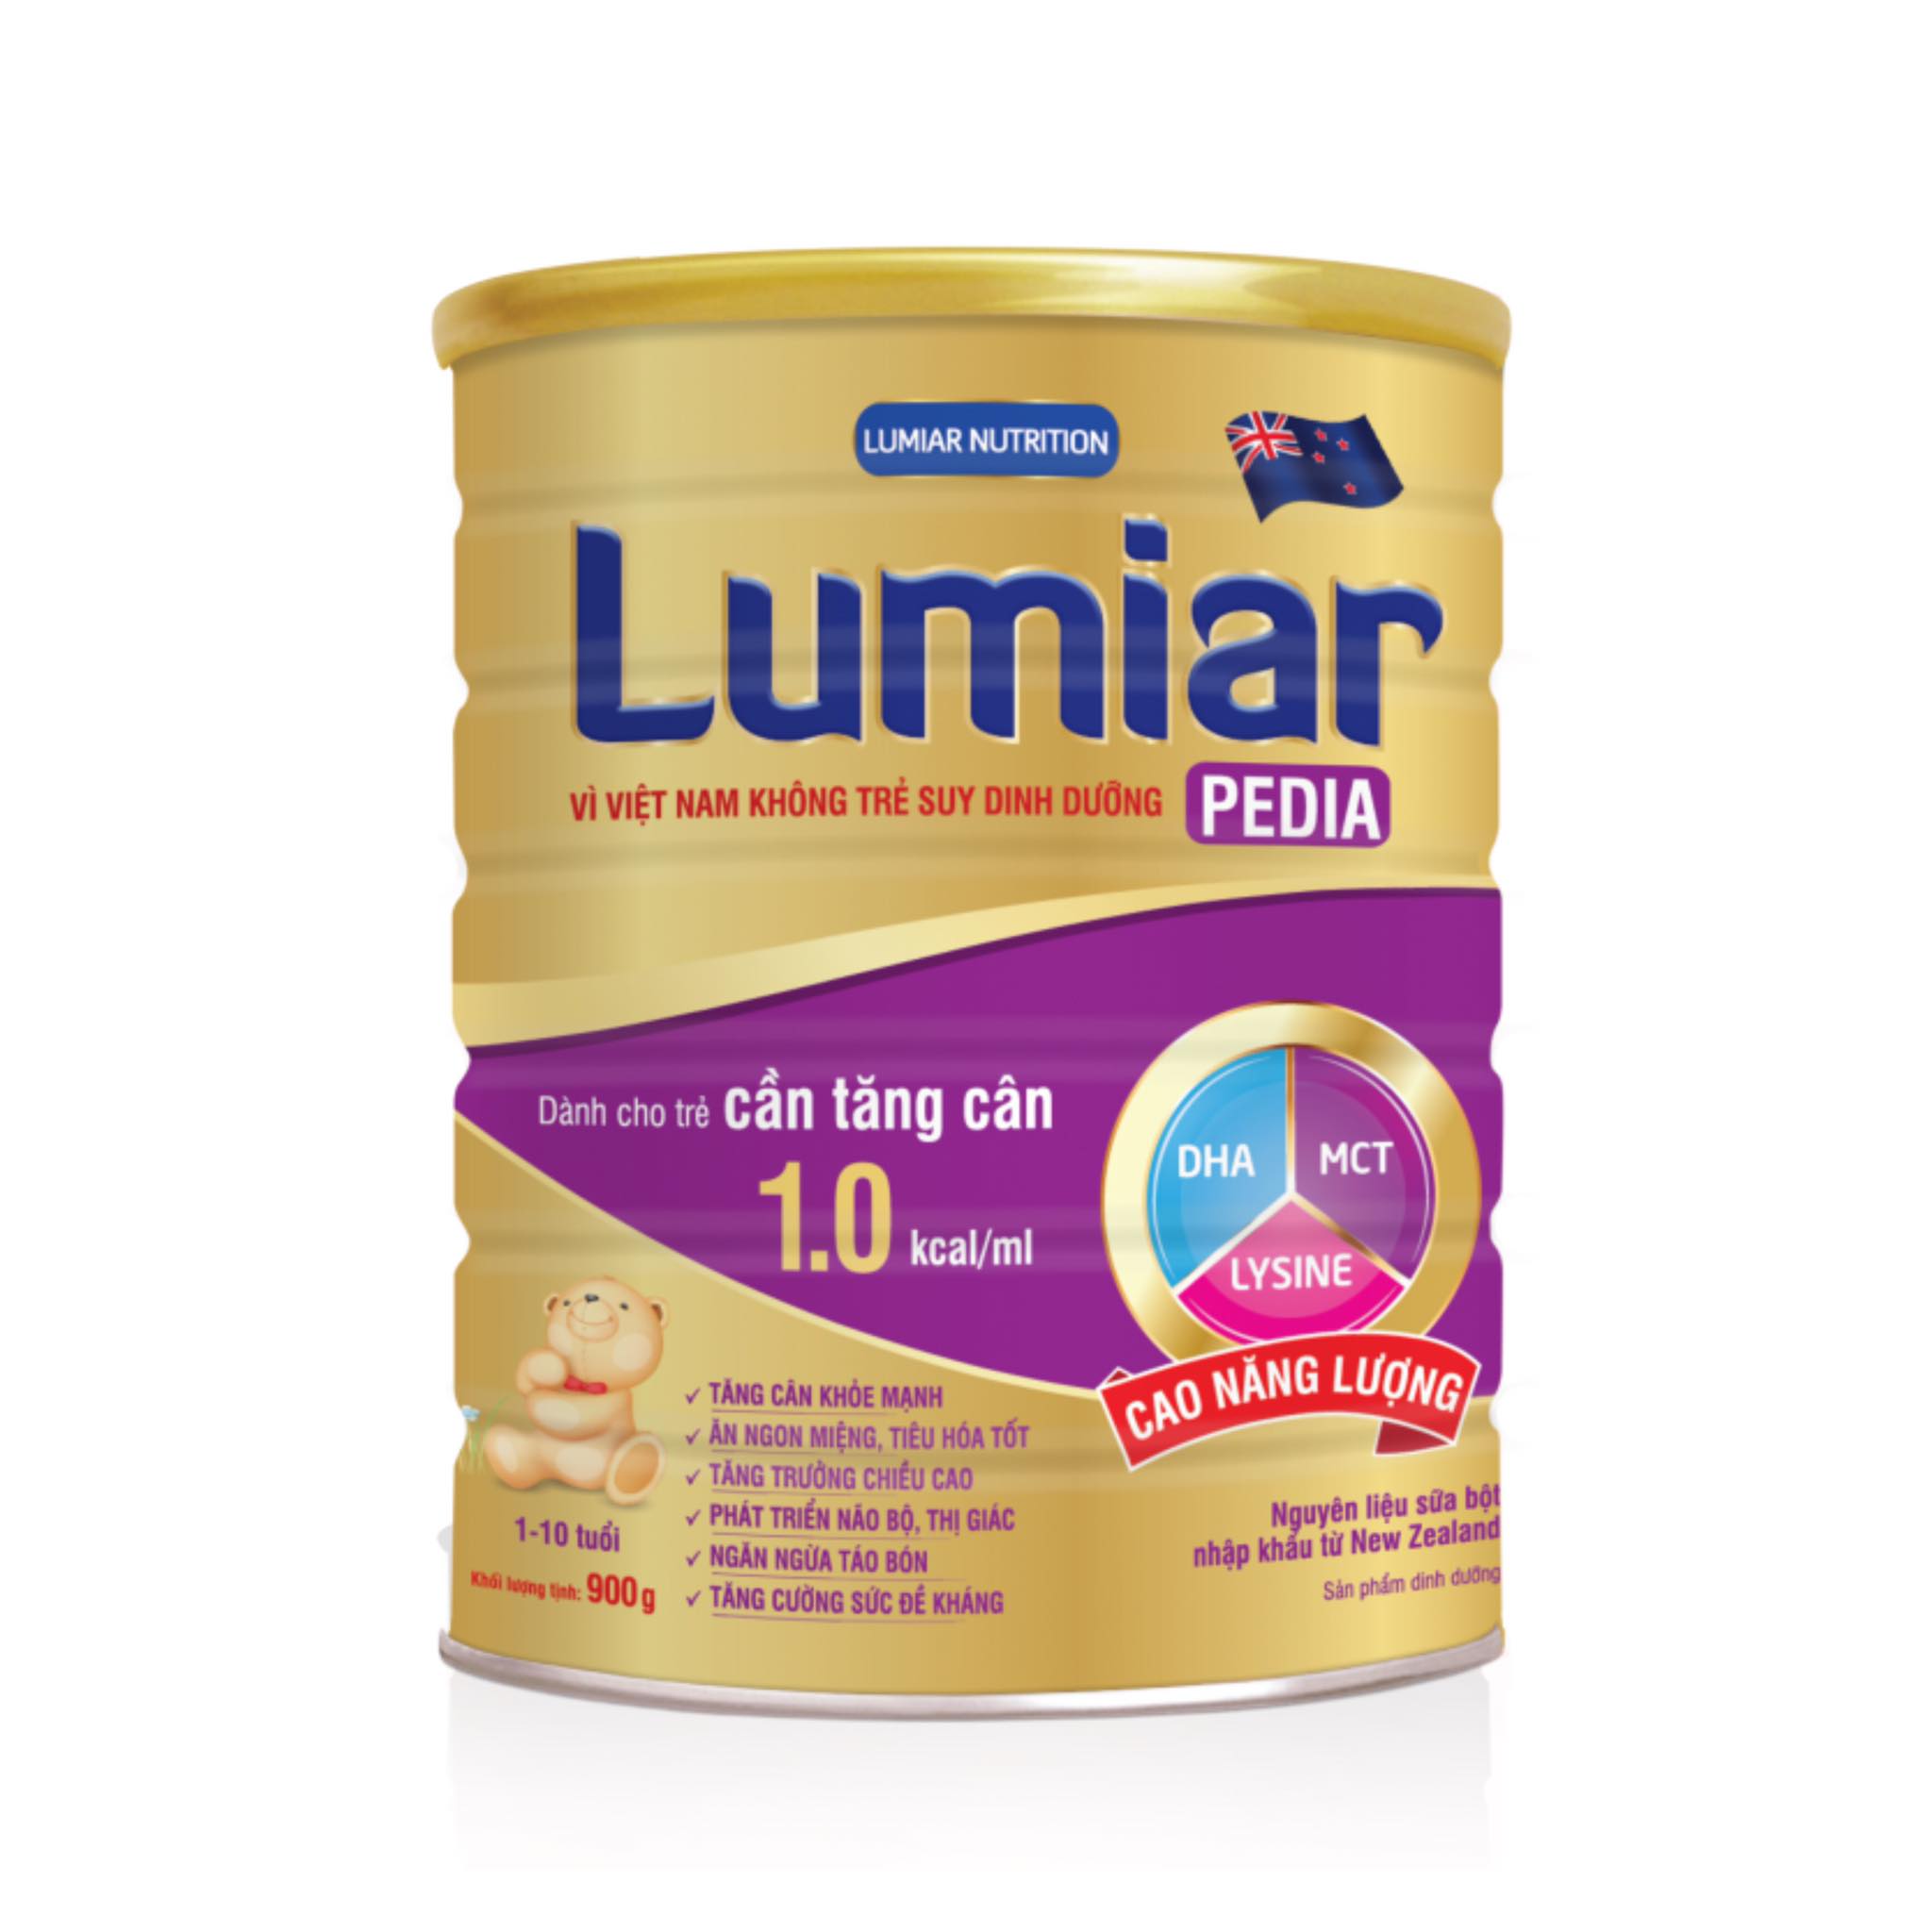 Sữa bột Lumiar Pedia 900g - sản phẩm dành cho trẻ cần tăng cân với DHA, MCT, LYSINE cao năng lượng